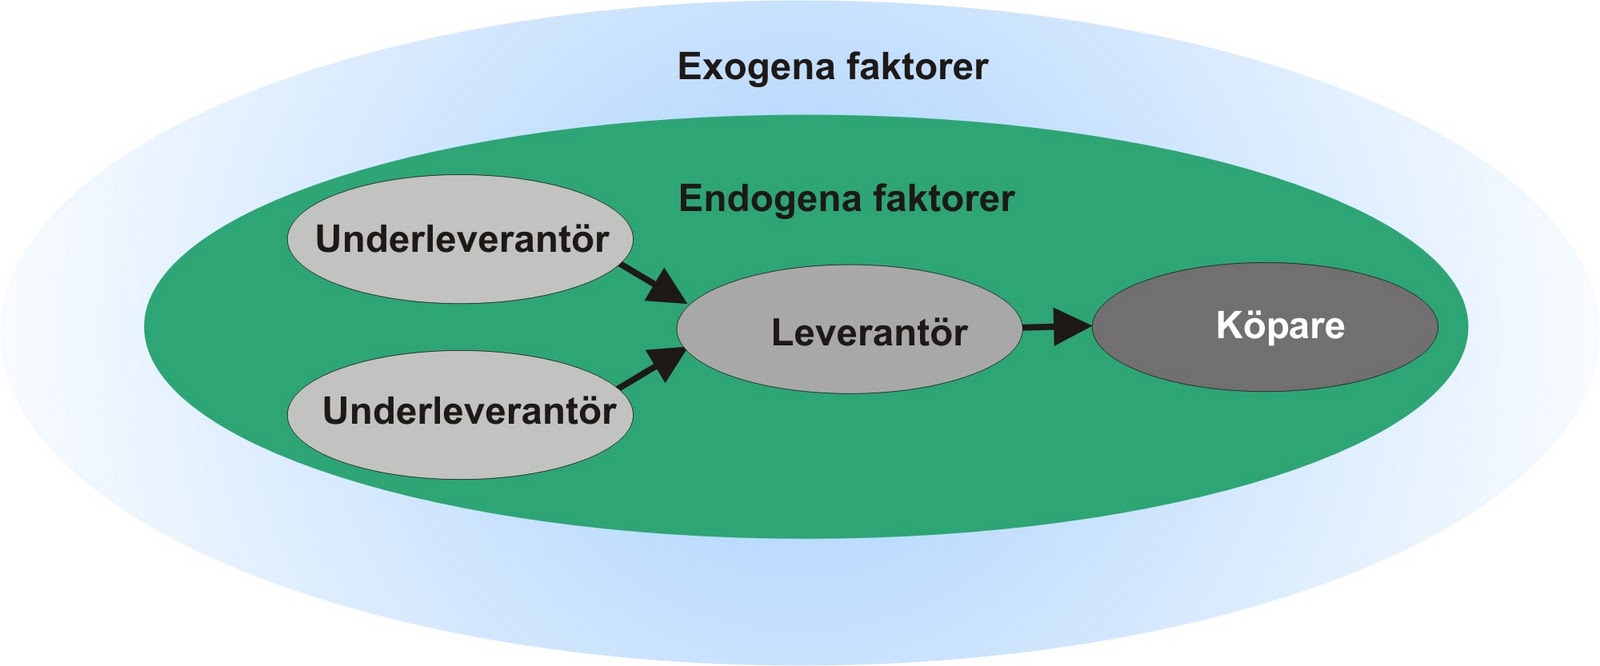 Exogena och endogena faktorer i en leveranskedja